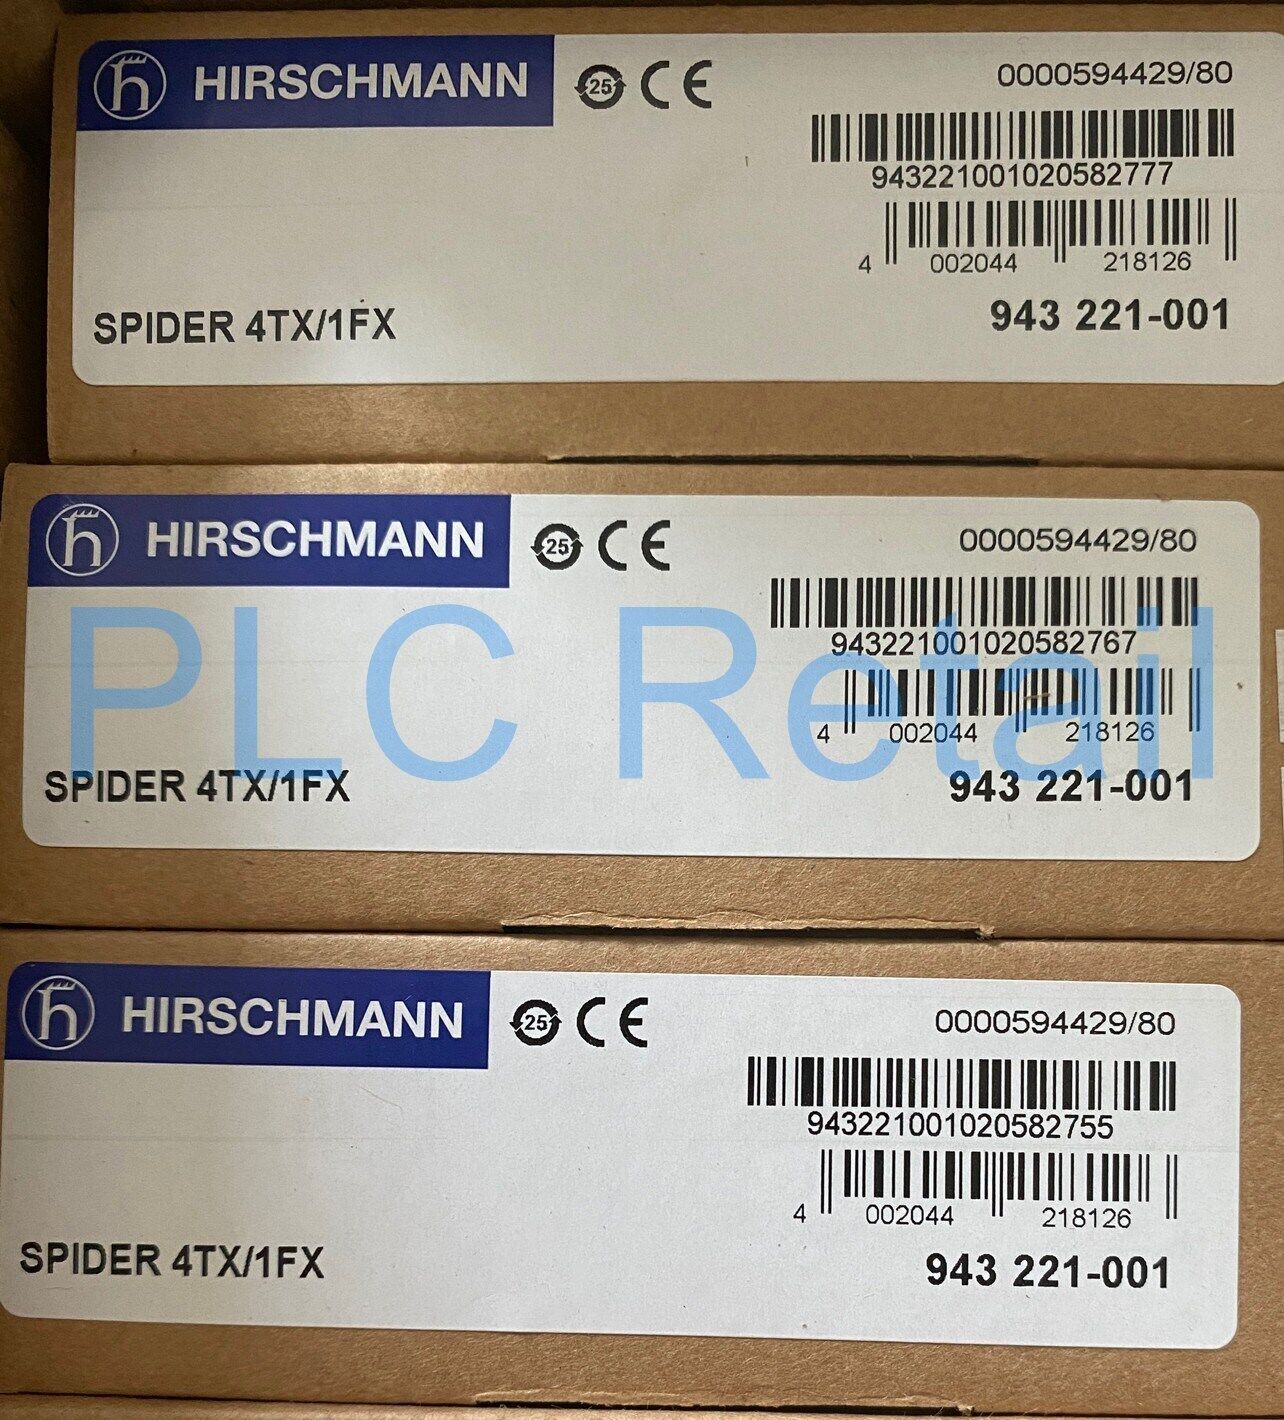 NEW HIRSCHMANN Unmanaged 100 Gigabit Switch SPIDER 4TX/1FX Fast delivery